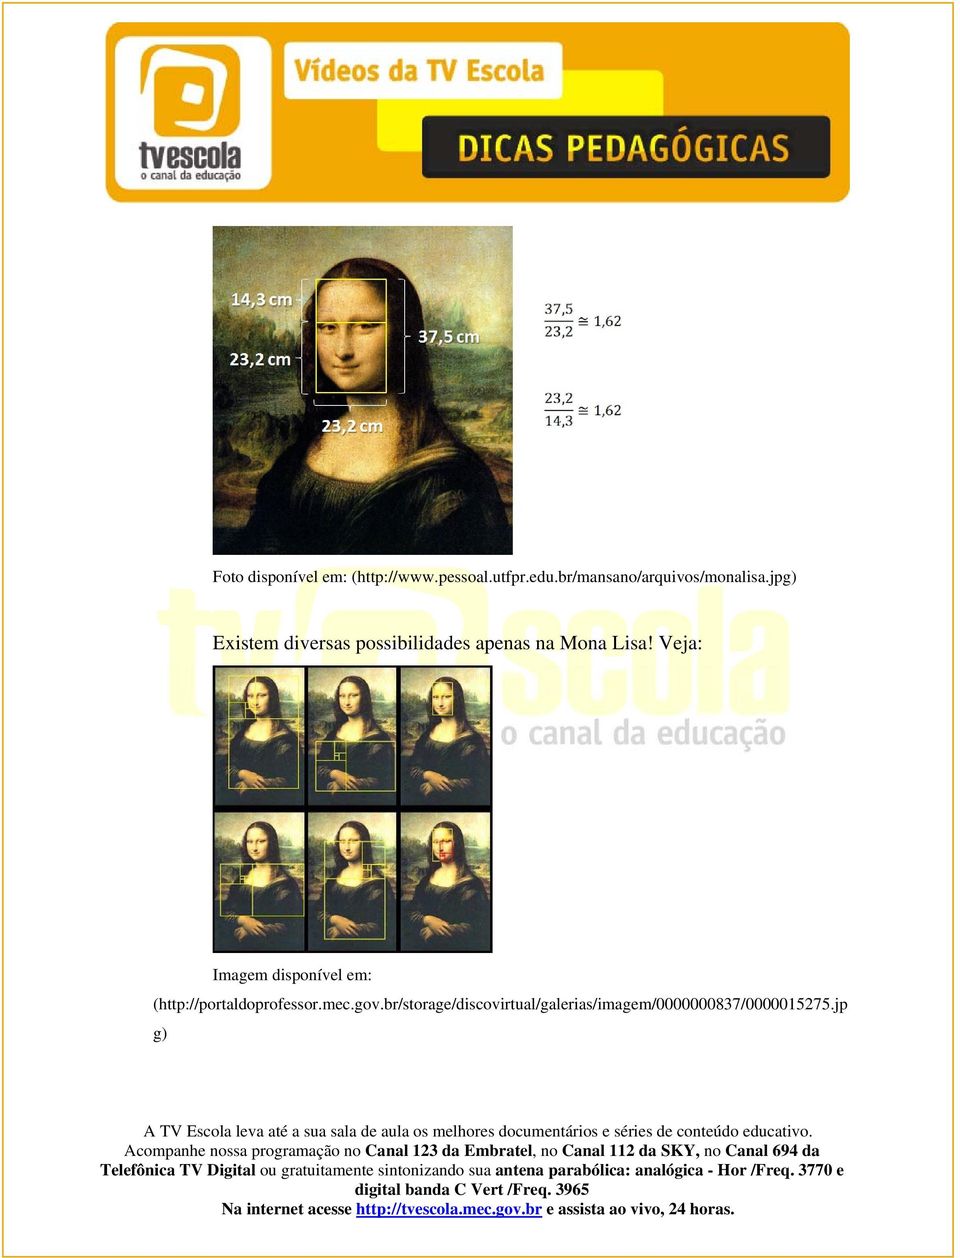 jpg) Existem diversas possibilidades apenas na Mona Lisa!